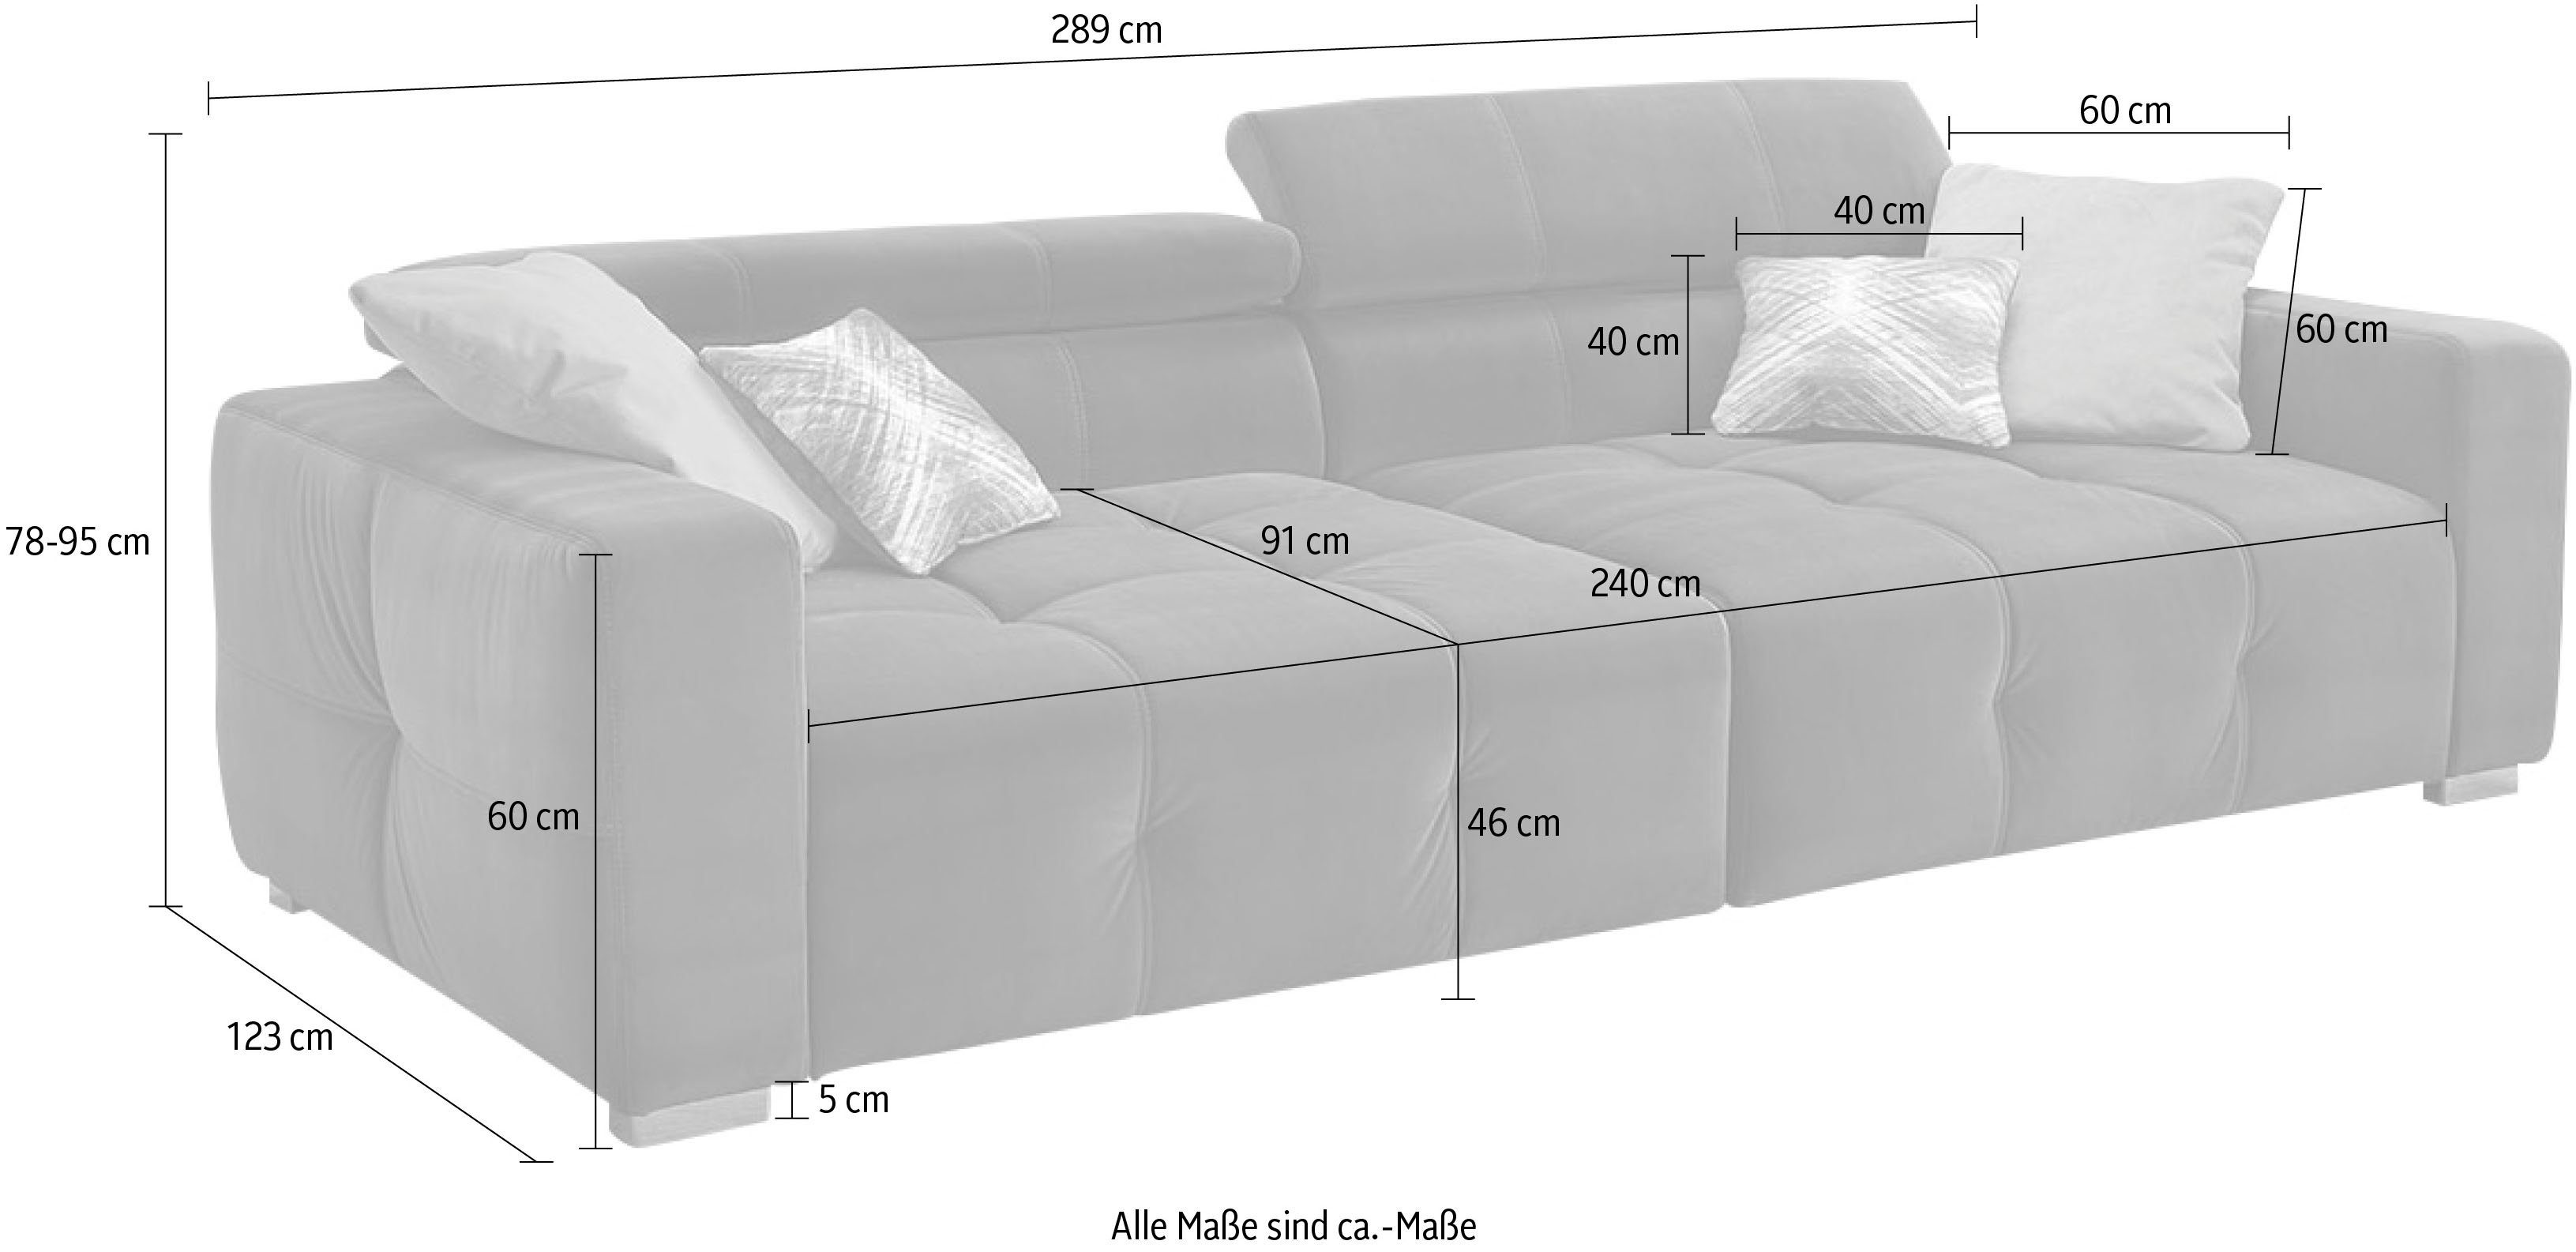 mehrfach Big-Sofa Wellenfederung, grau und Gruppe Jockenhöfer Trento, Sitzkomfort mit verstellbare Kopfstützen